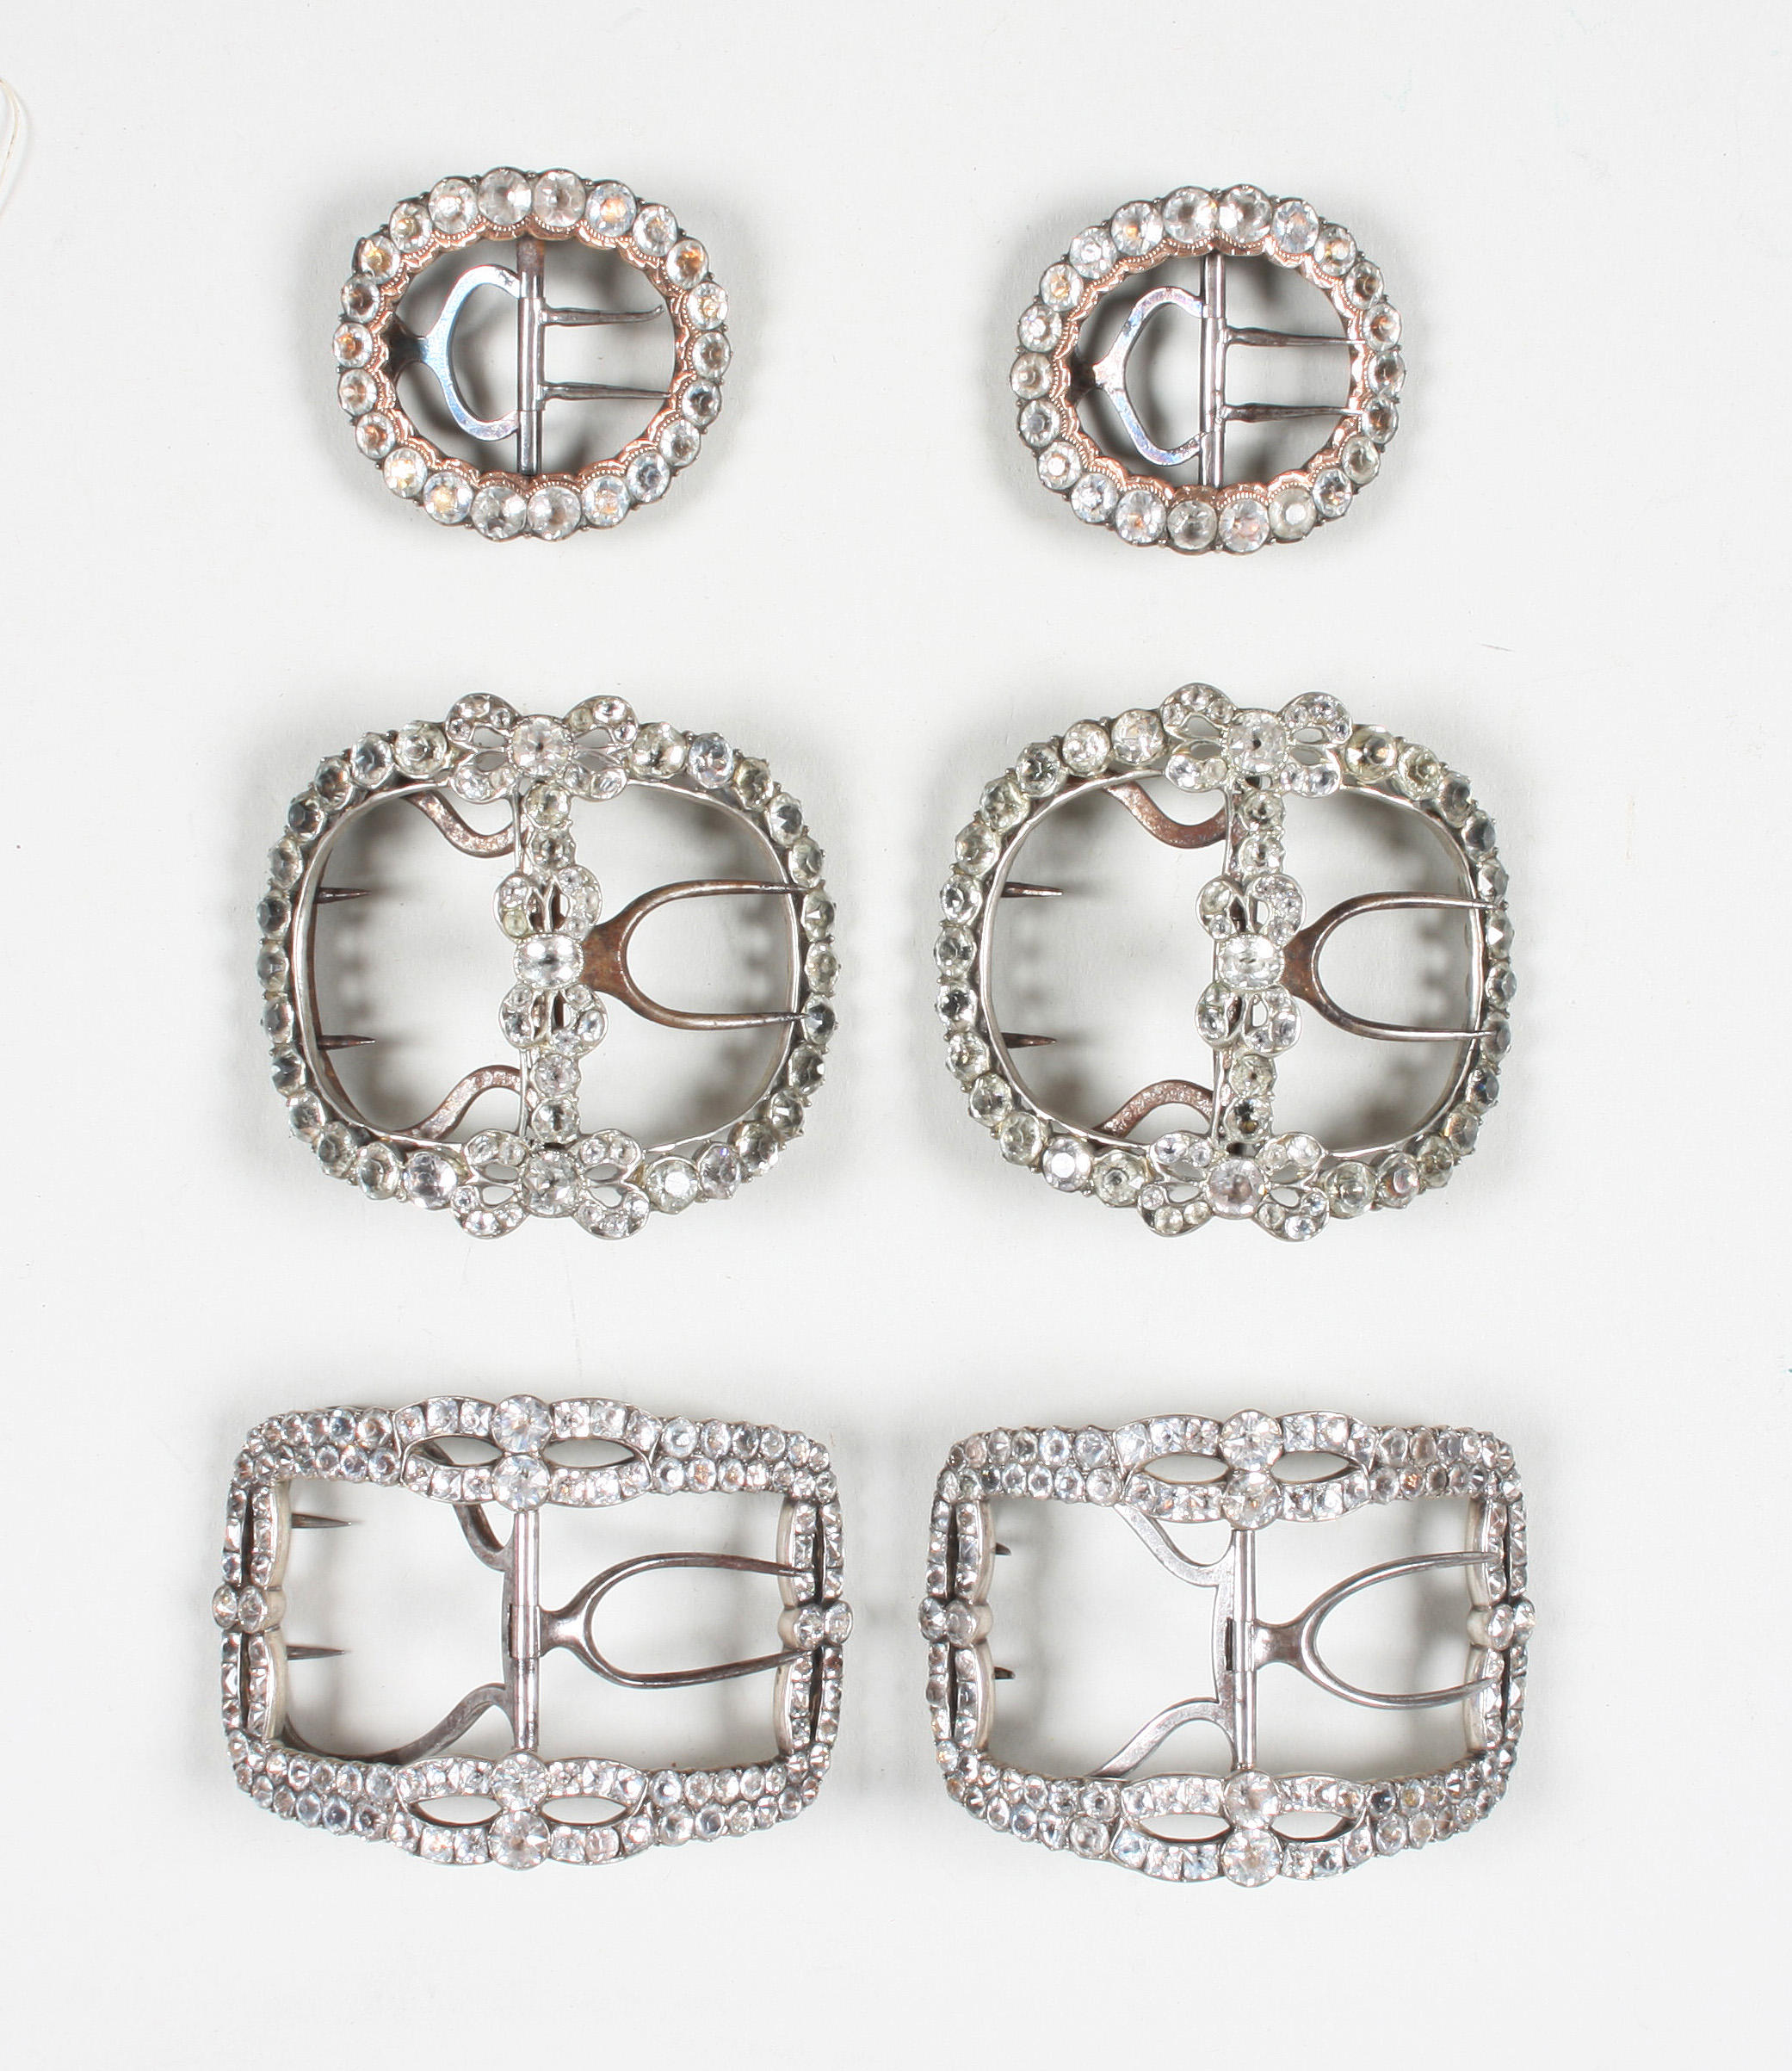 Three pairs of George III metal buckles